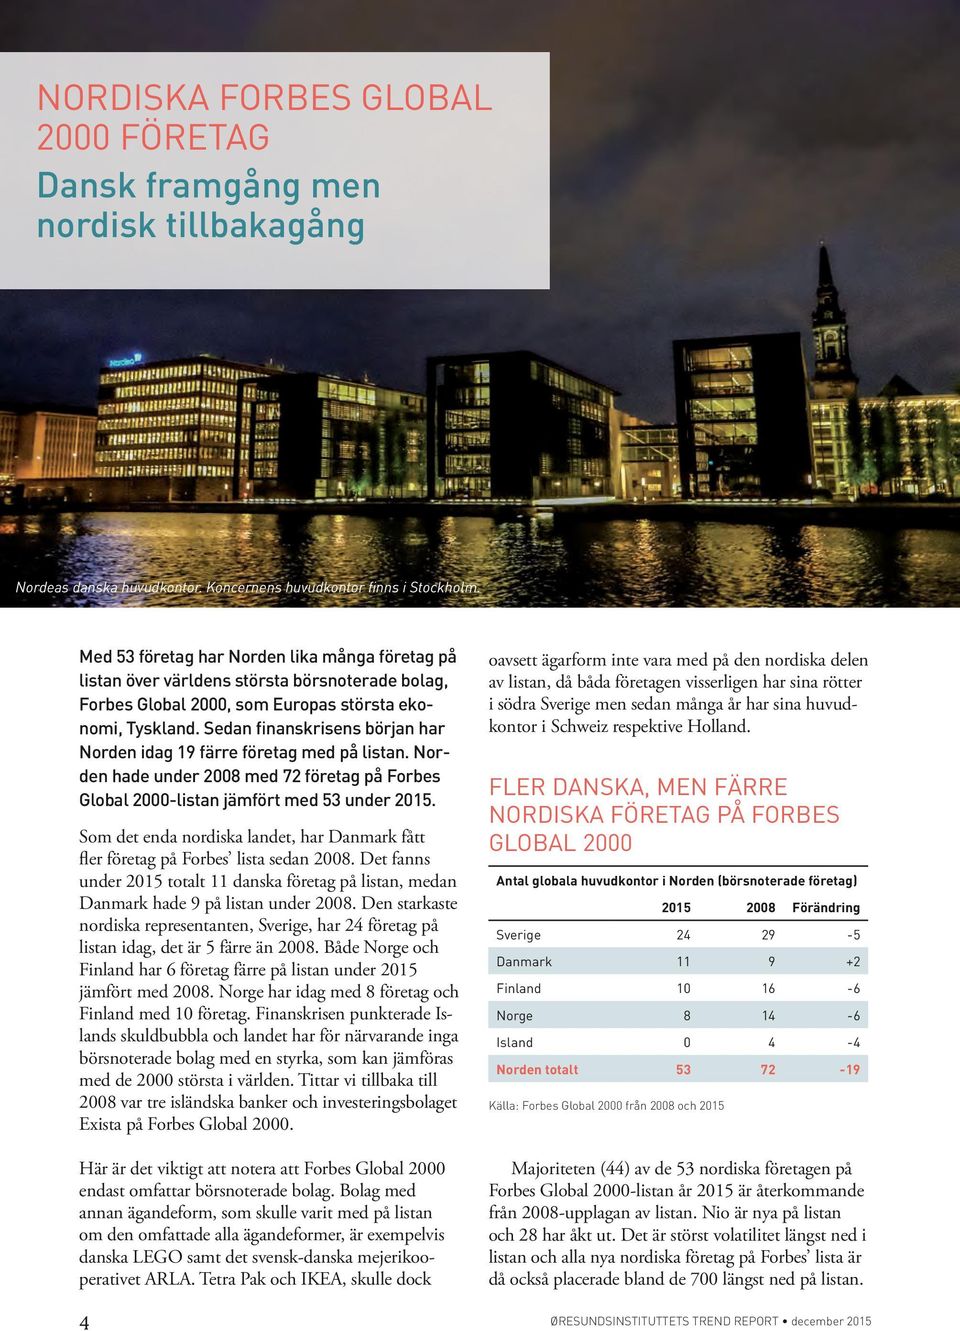 Sedan finanskrisens början har Norden idag 19 färre företag med på listan. Norden hade under 2008 med 72 företag på Forbes Global 2000-listan jämfört med 53 under 2015.